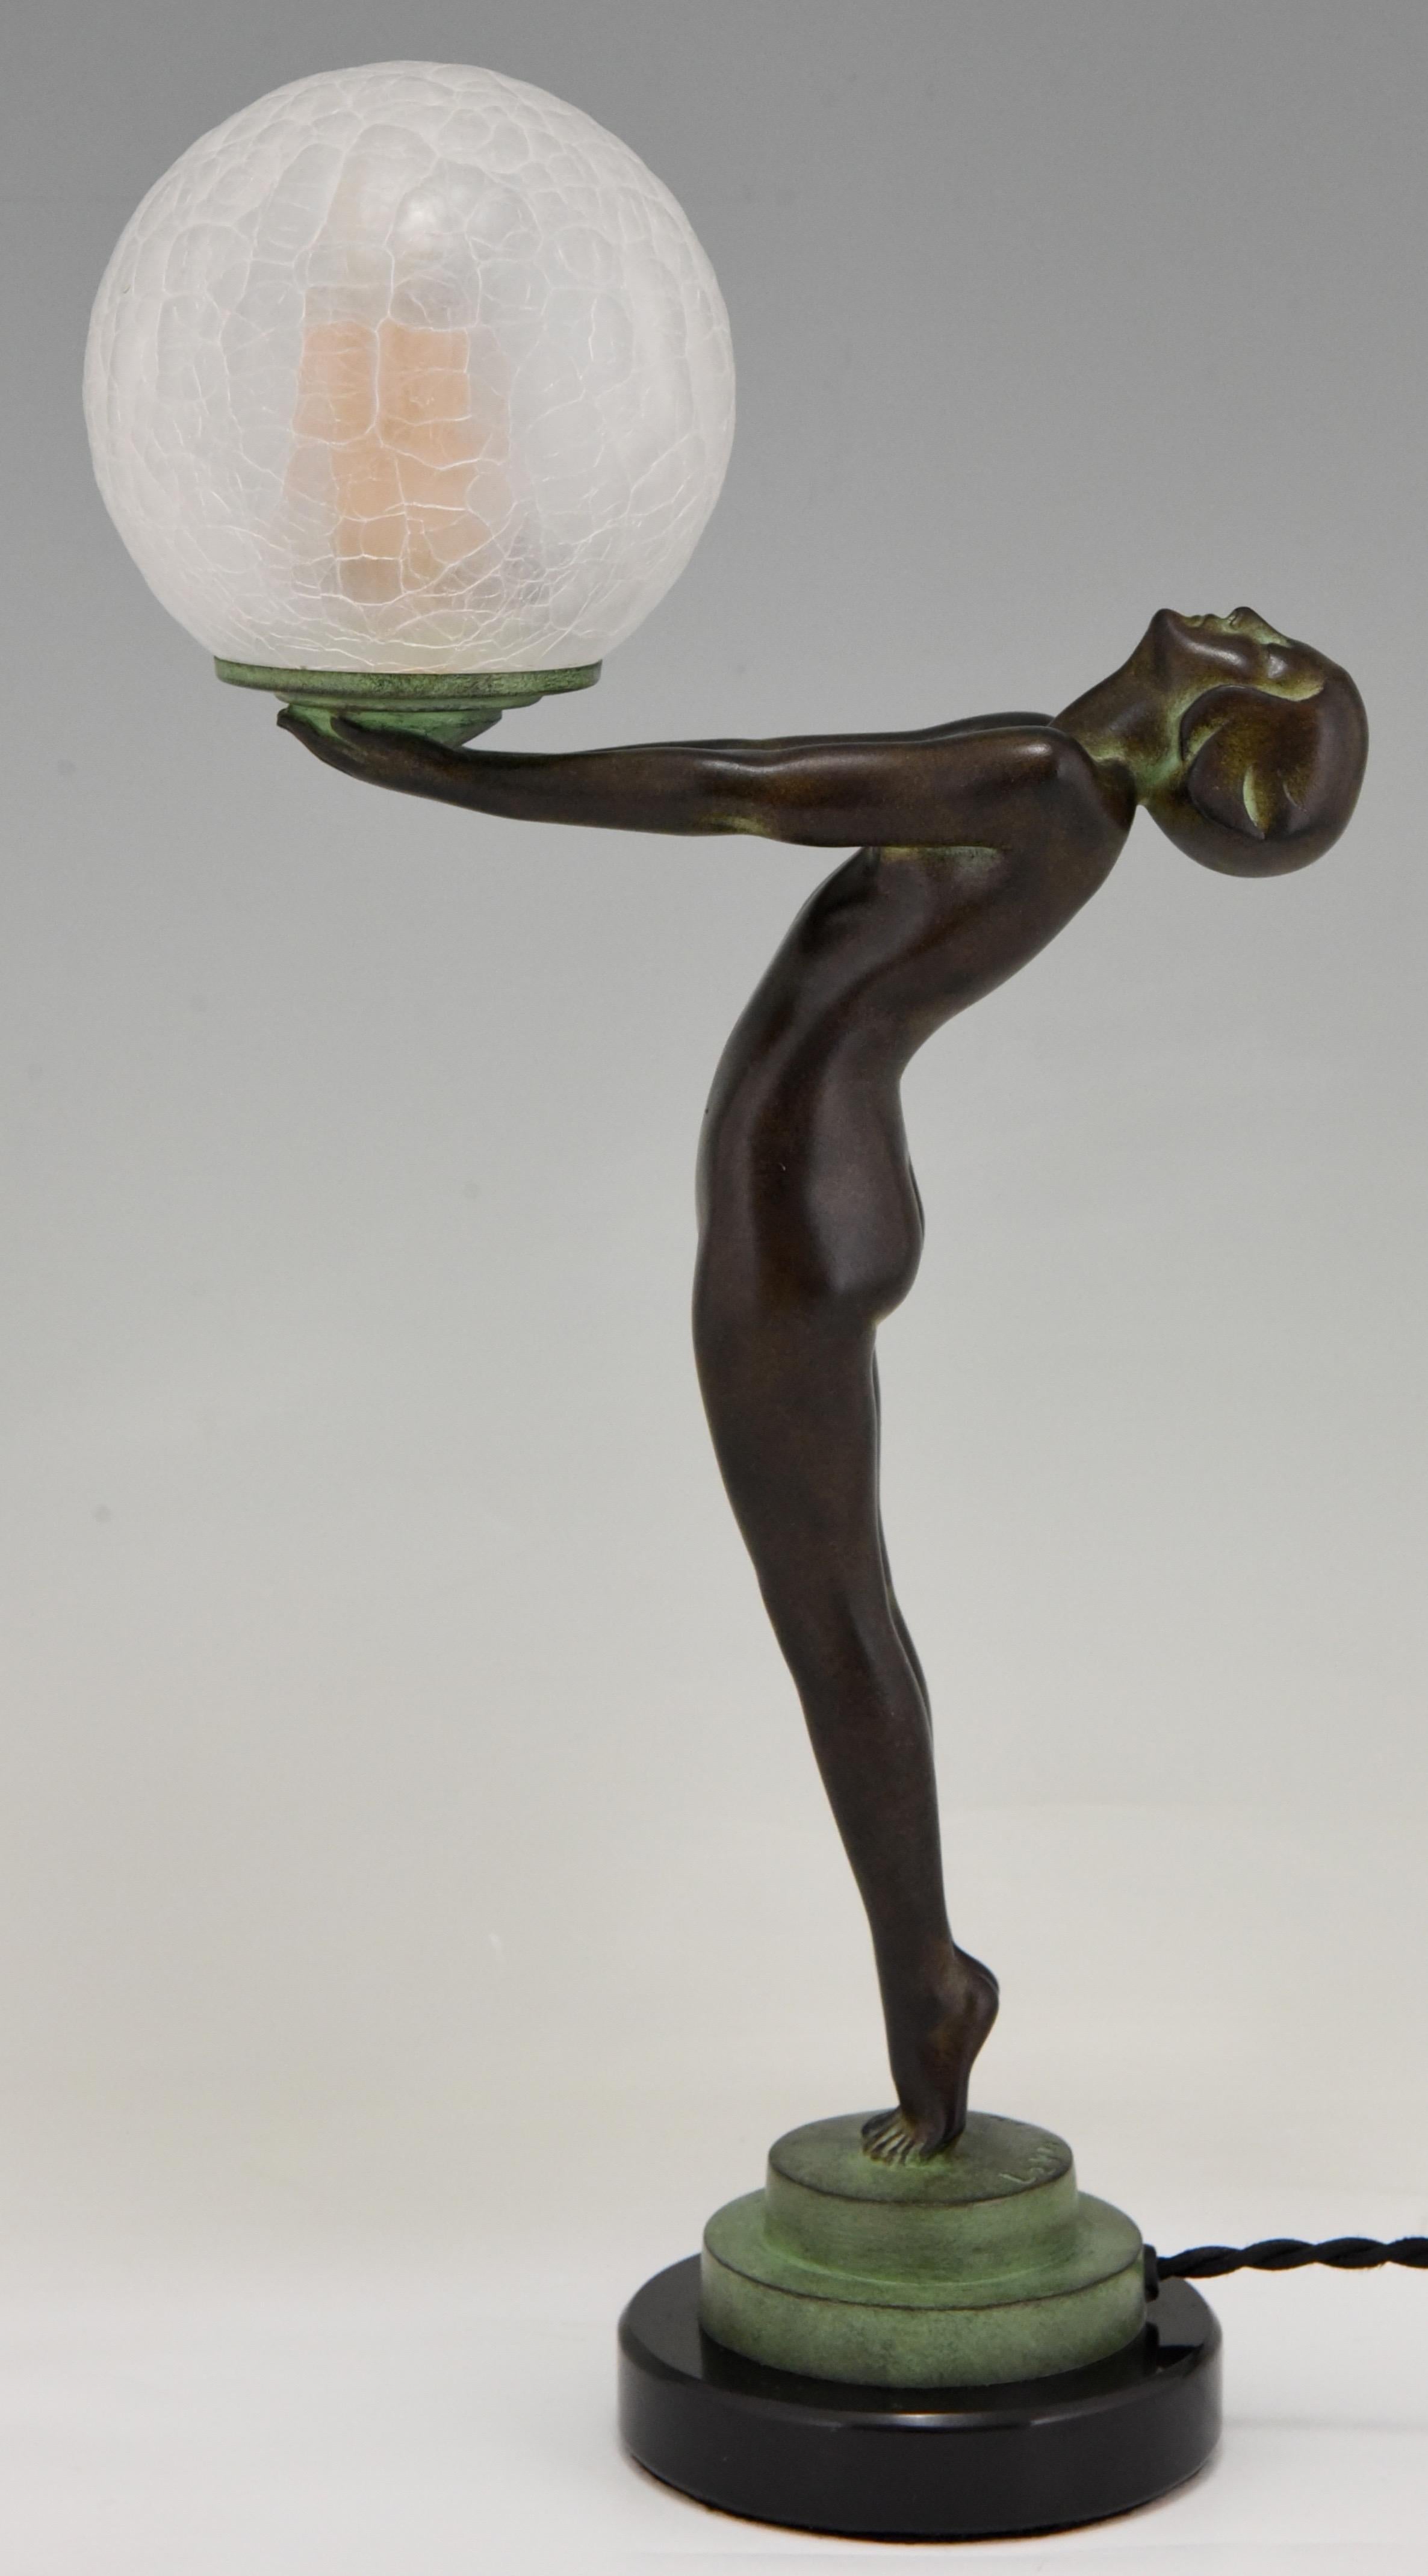 Lampe de table figurative de style Art Déco représentant une femme nue debout tenant un globe en verre.
Ce modèle, appelé Lueur lumineuse, est la version réduite de l'emblématique lampe Clarté de Max Le Verrier.
La lampe est signée et porte la